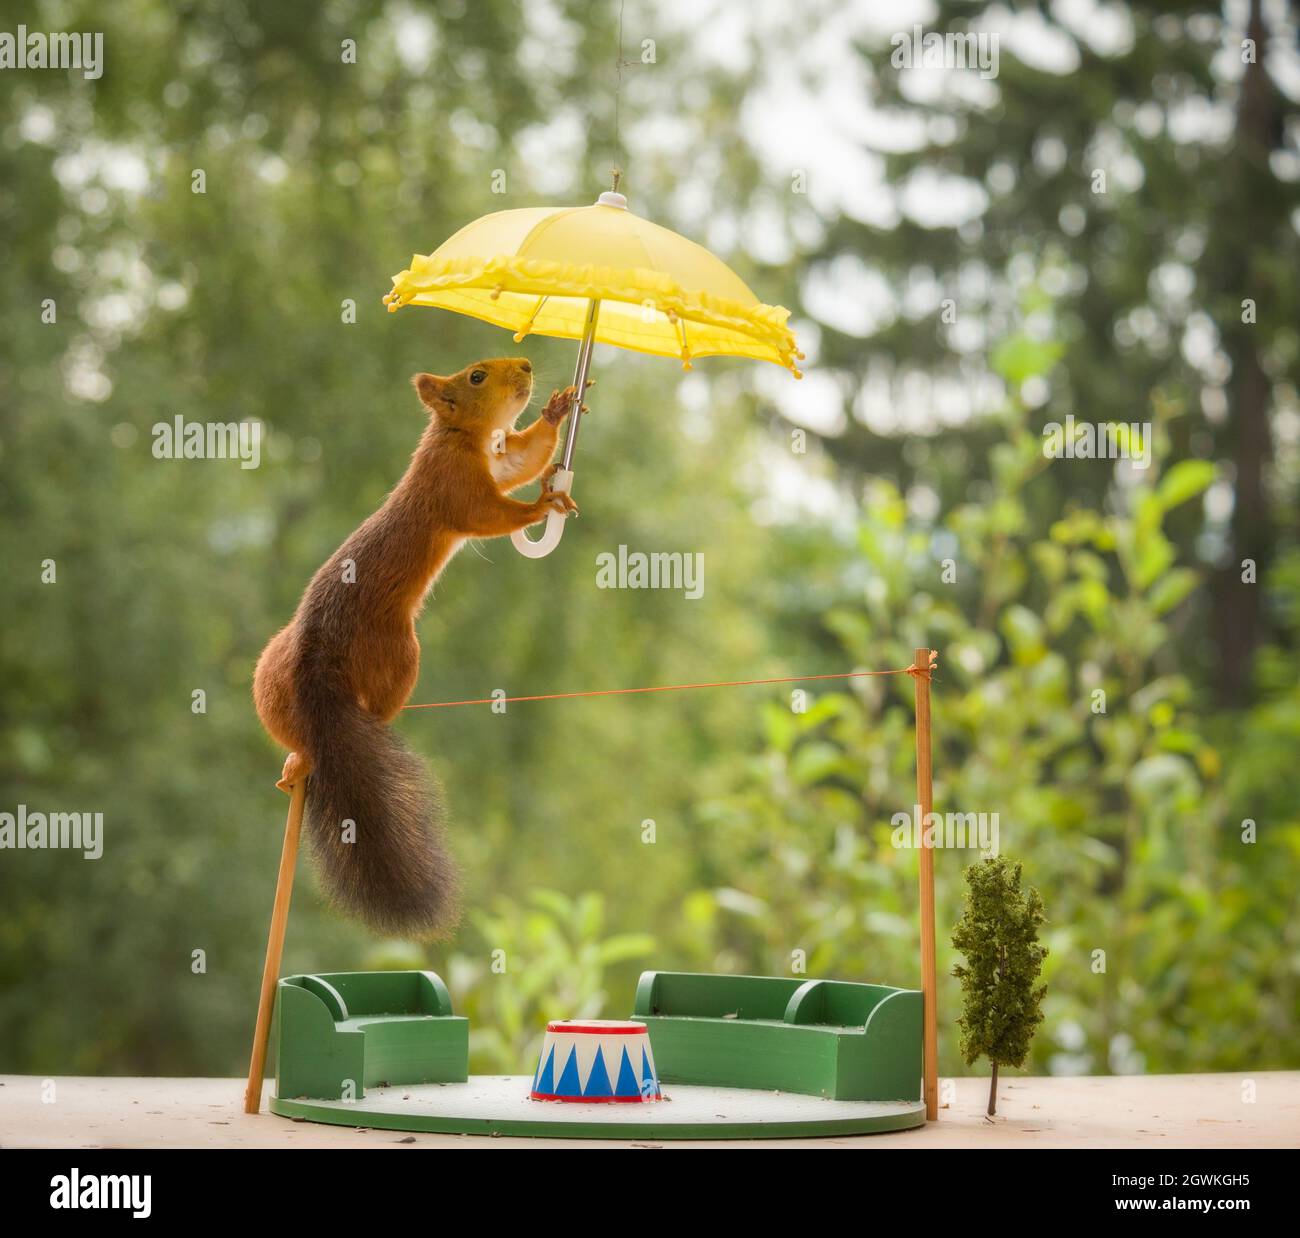 Eichhörnchen halten einen Regenschirm auf einem Seil Stockfotografie - Alamy